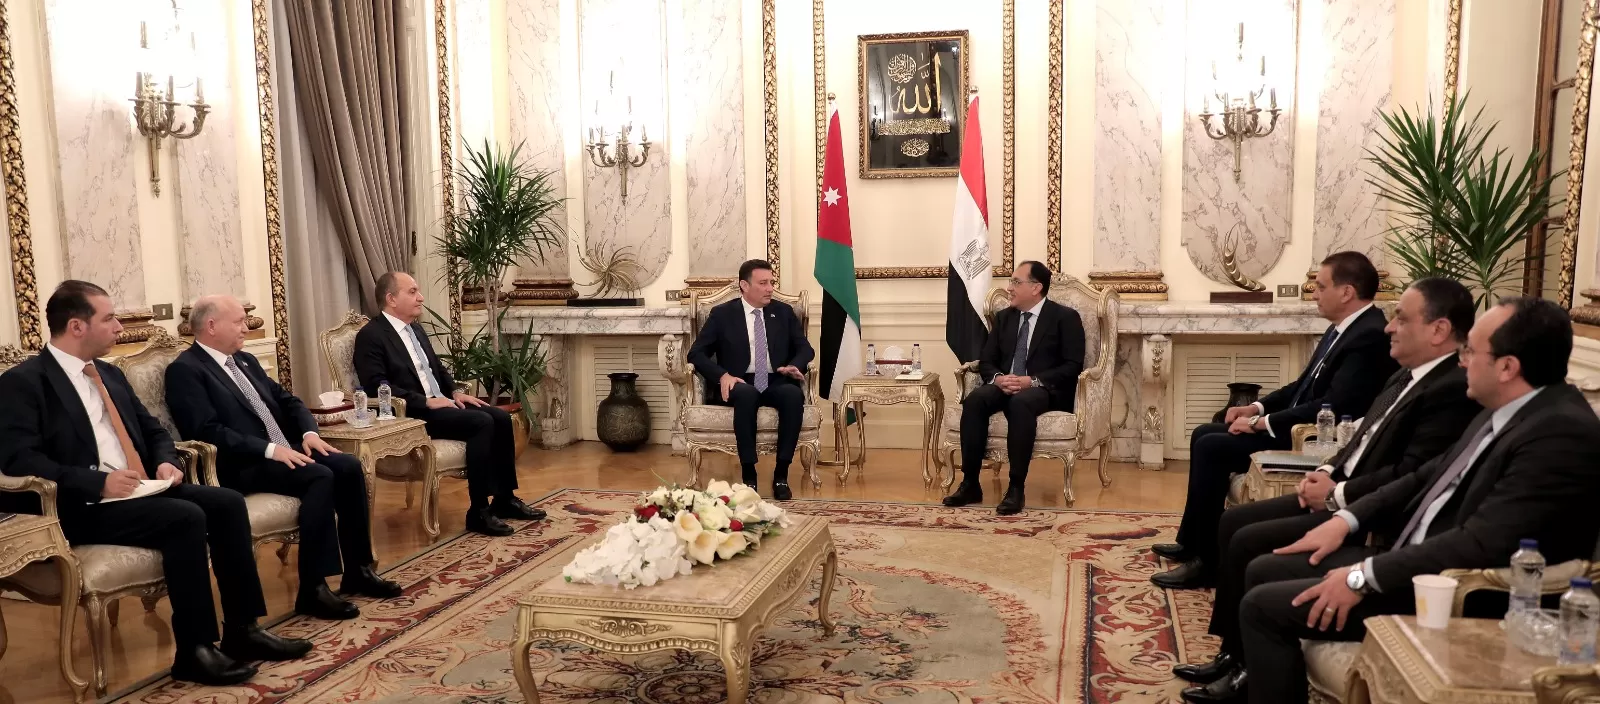 مدار الساعة,أخبار مجلس النواب الأردني,مجلس النواب,الملك عبد الله الثاني,الرئيس عبد الفتاح السيسي,مجلس النواب الأردني